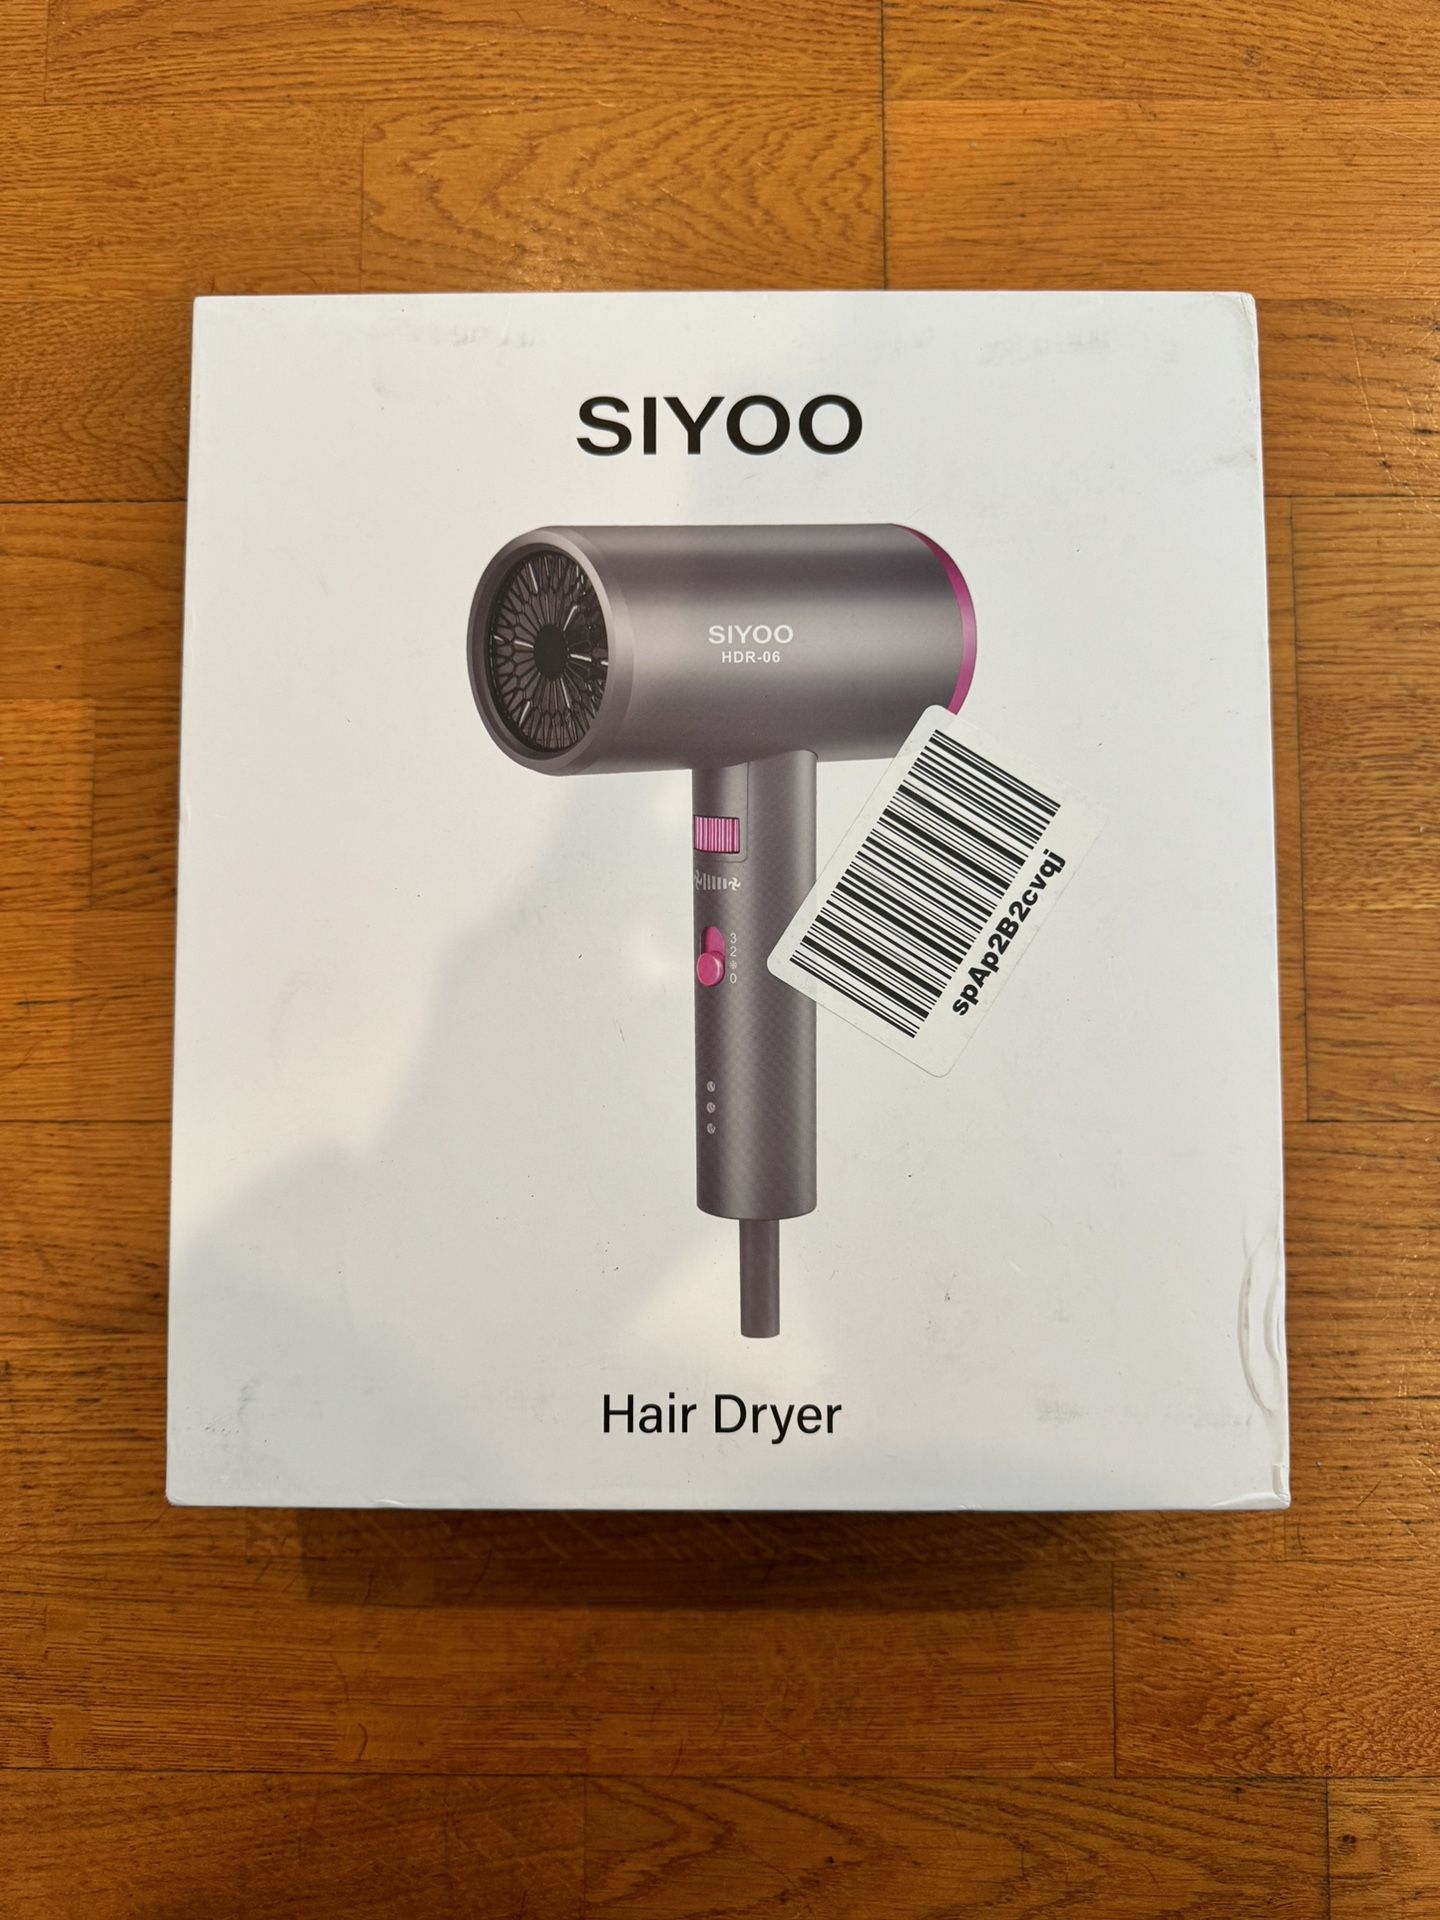 Hair Dryer 